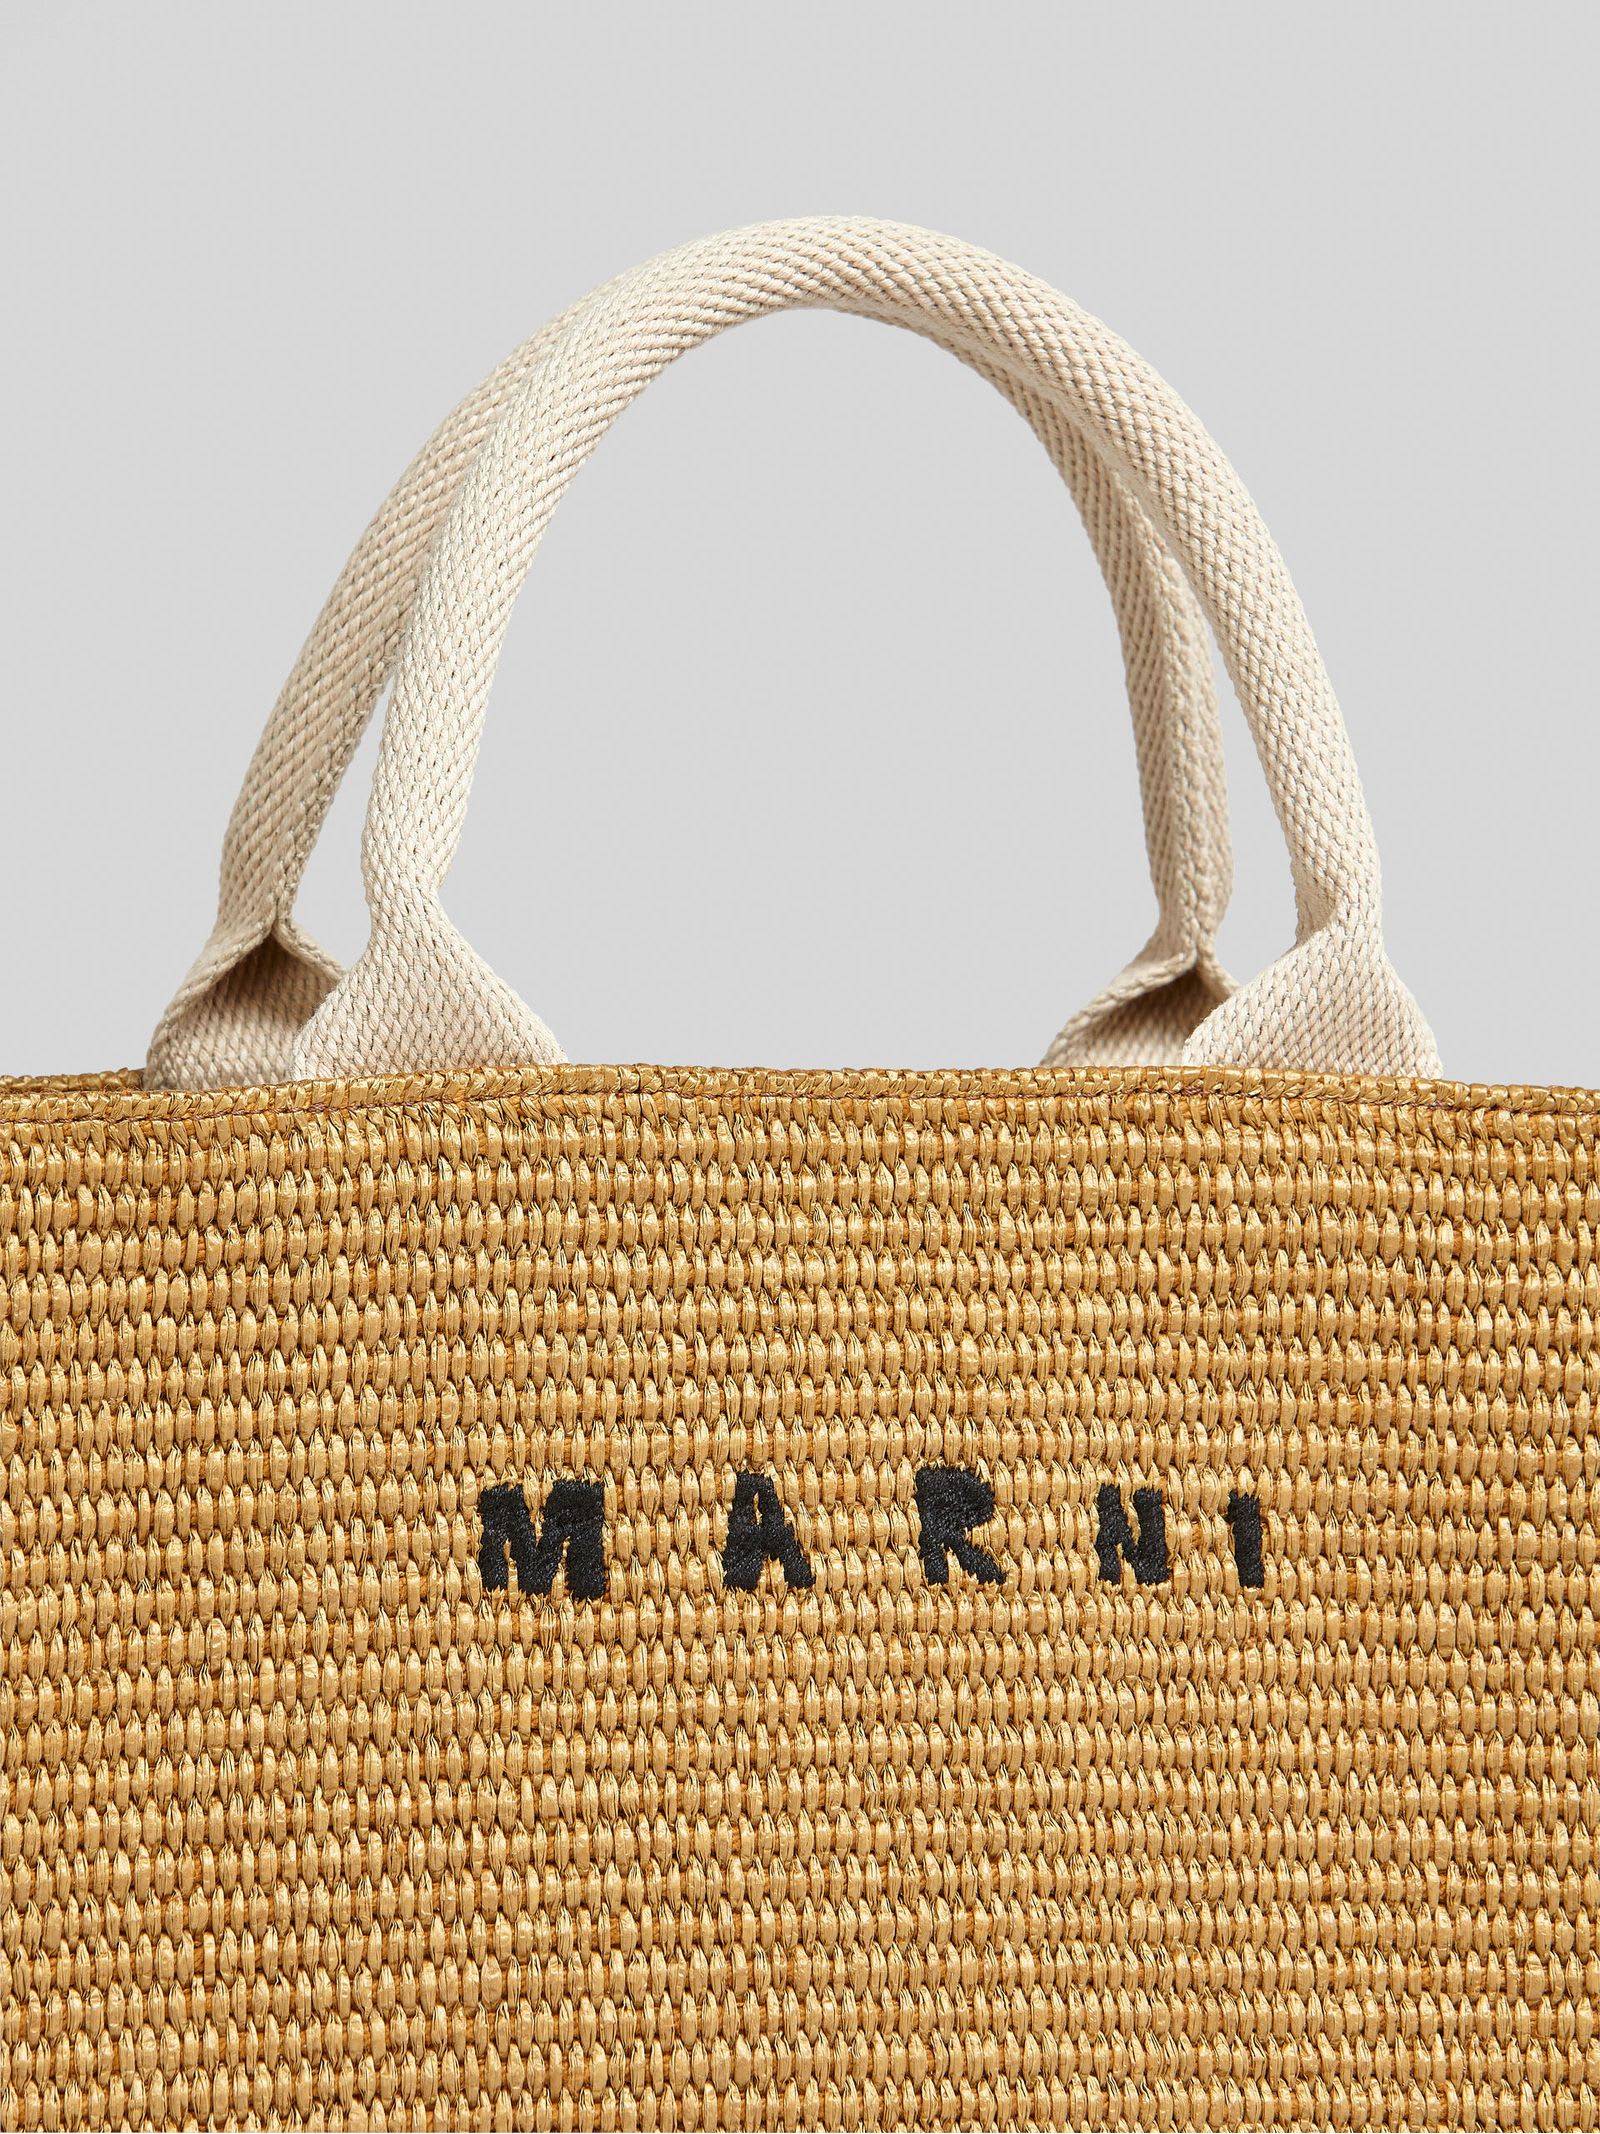 Shop Marni Brown Raffia-effect Small Tote Bag